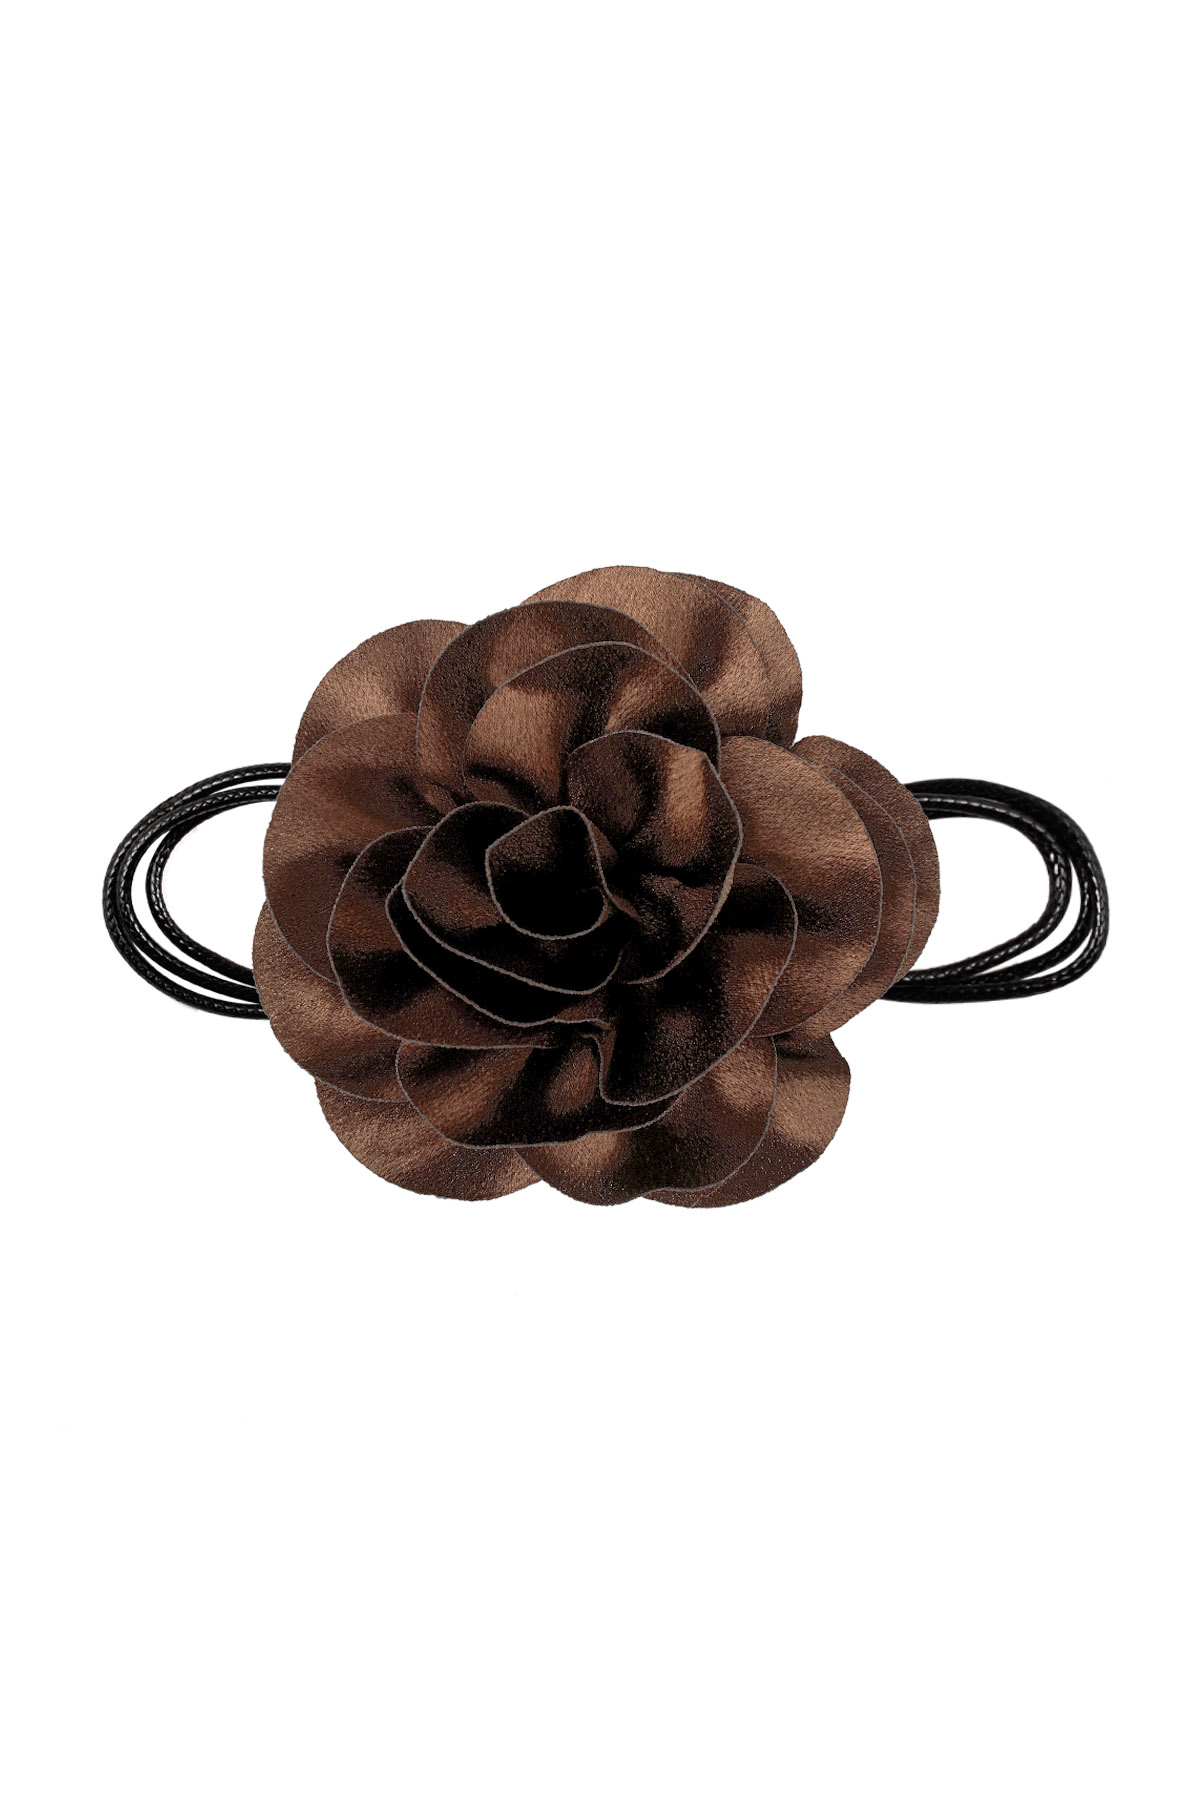 Collier corde fleur brillante - marron h5 